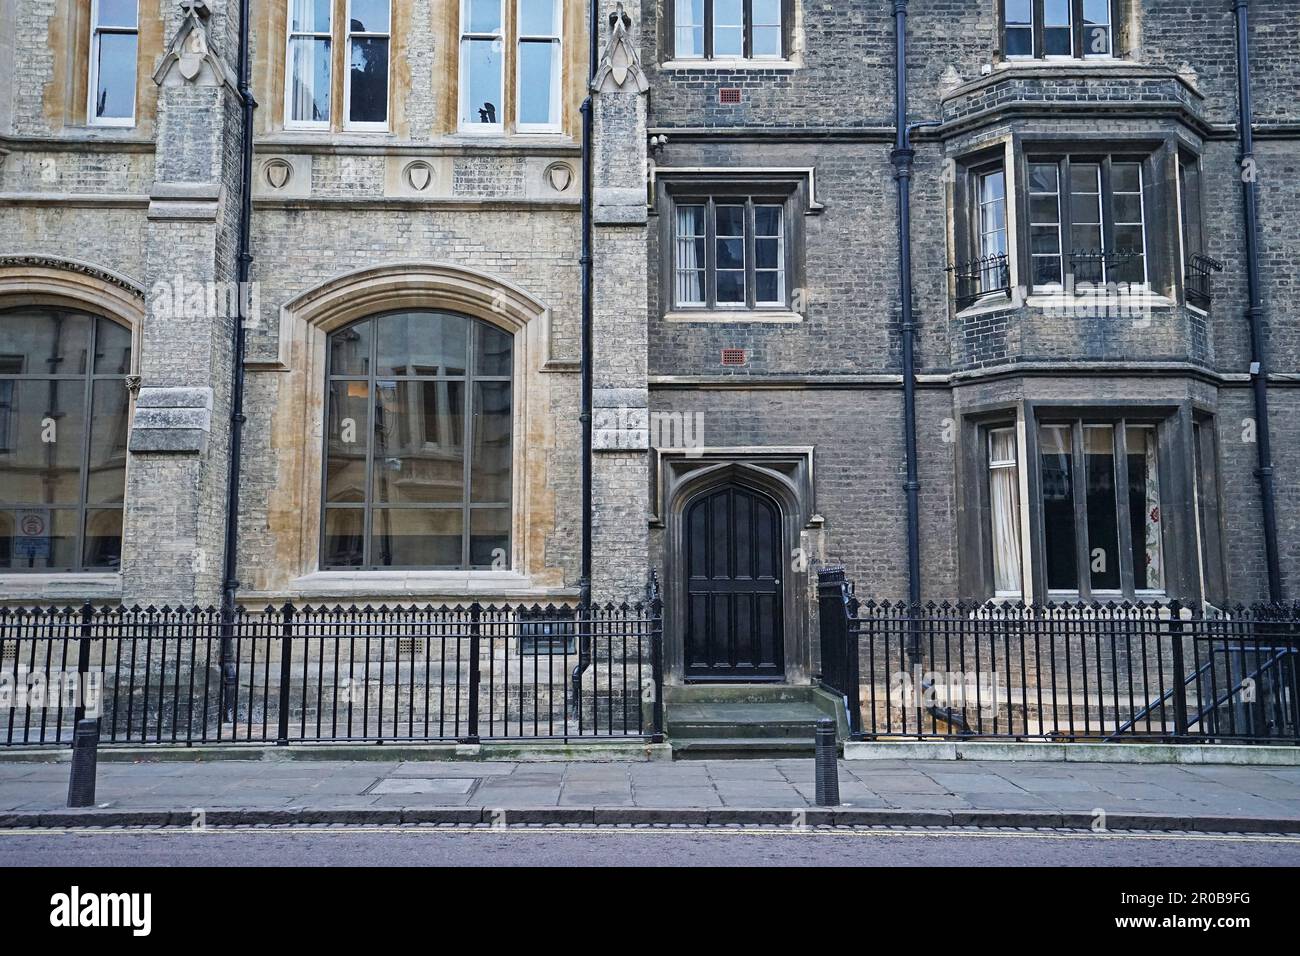 Äußere europäische Architektur und Dekoration des Oxford-Gebäudes und der Straße - England, Großbritannien Stockfoto